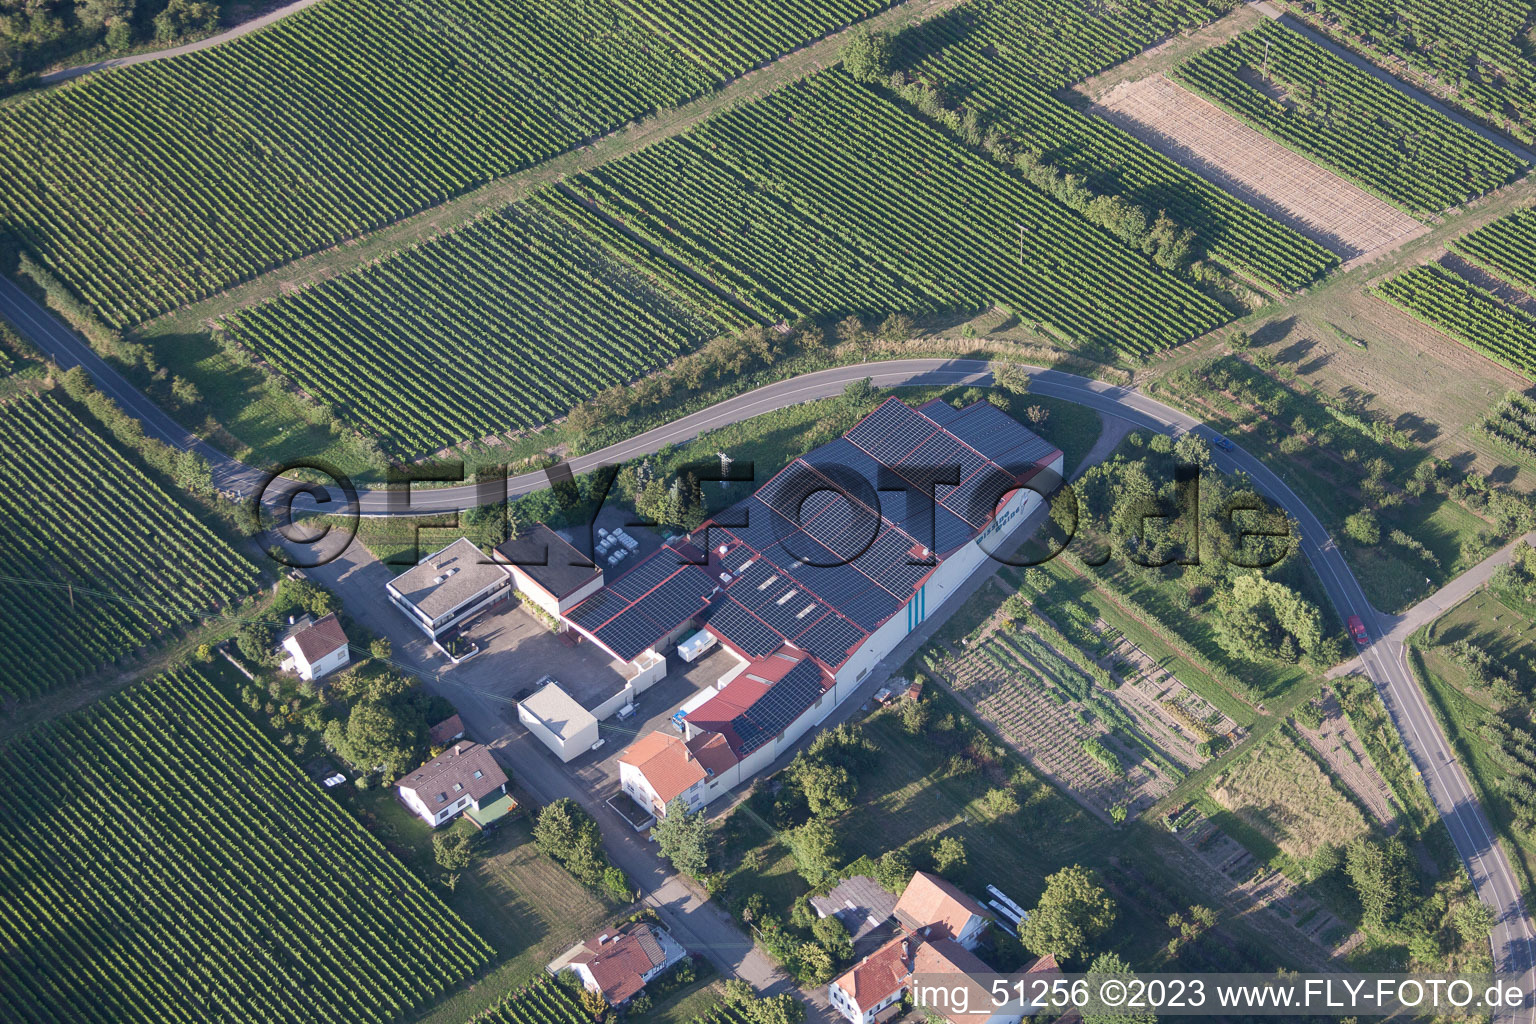 Vue aérienne de Les vins de Wissing à Oberotterbach dans le département Rhénanie-Palatinat, Allemagne